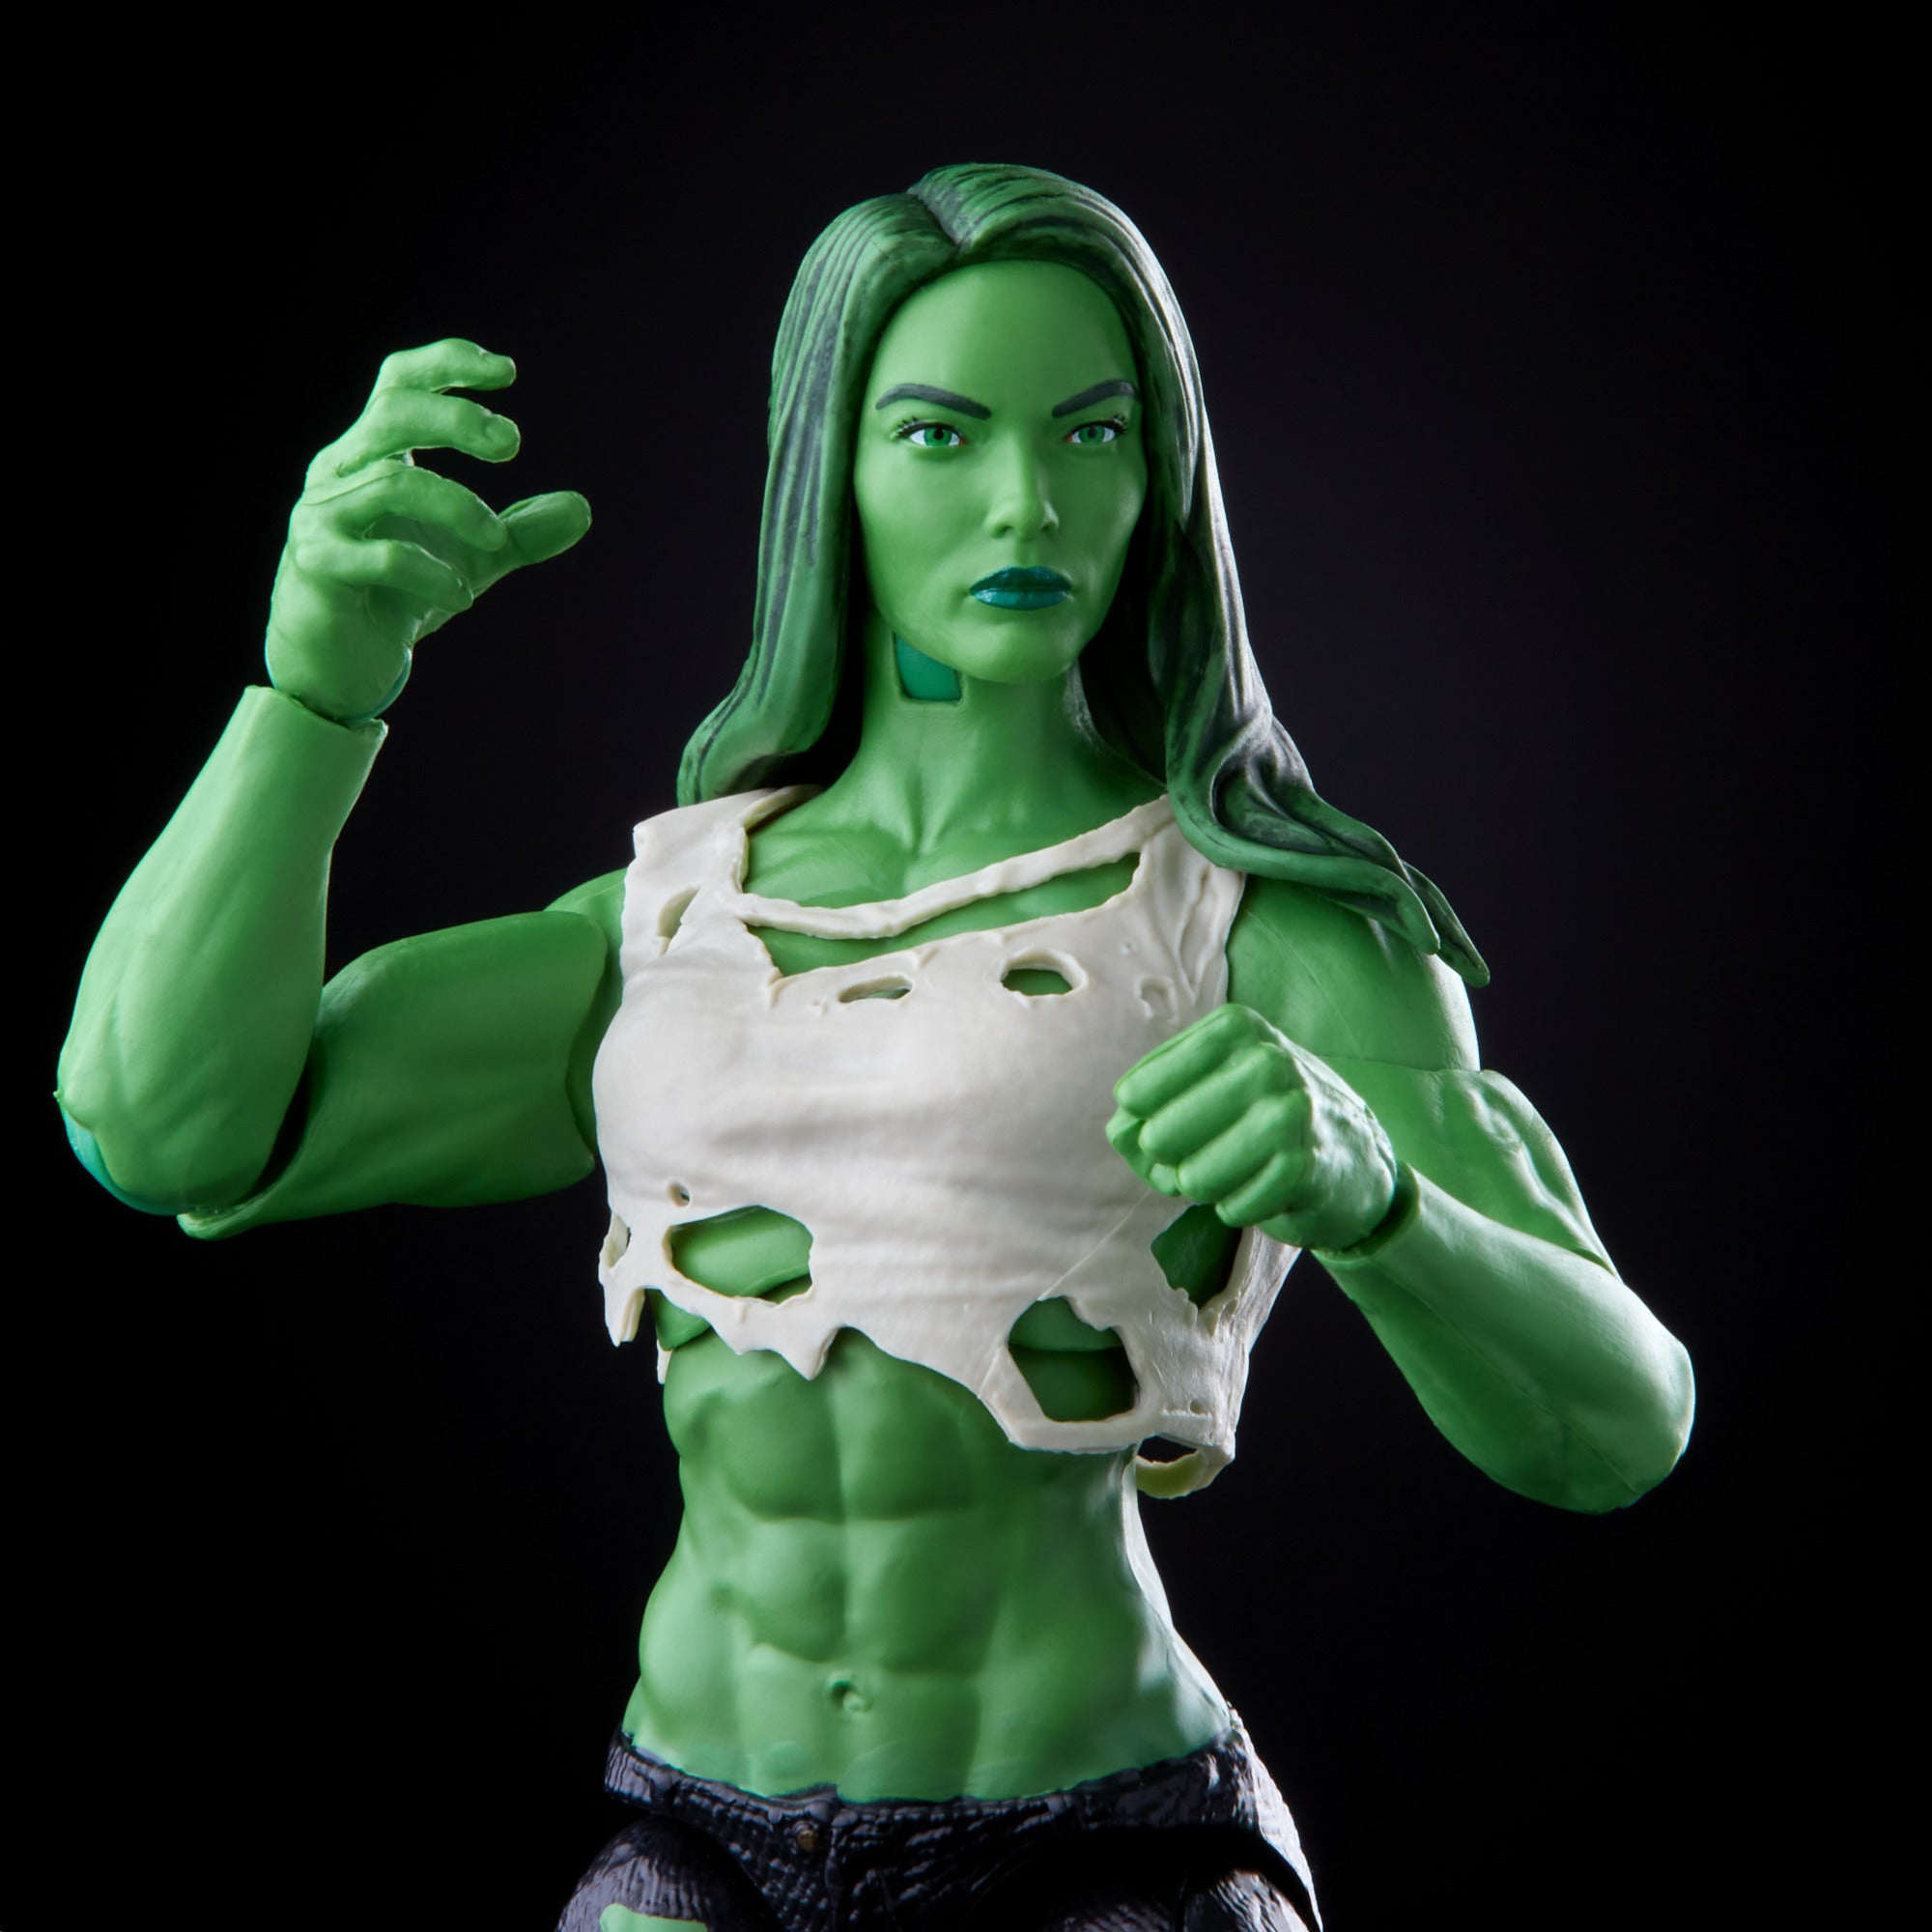 変更OK MARVEL Marvel Hasbro Legends Series Avengers 6-inch Scale She-Hulk  Figure and Ac